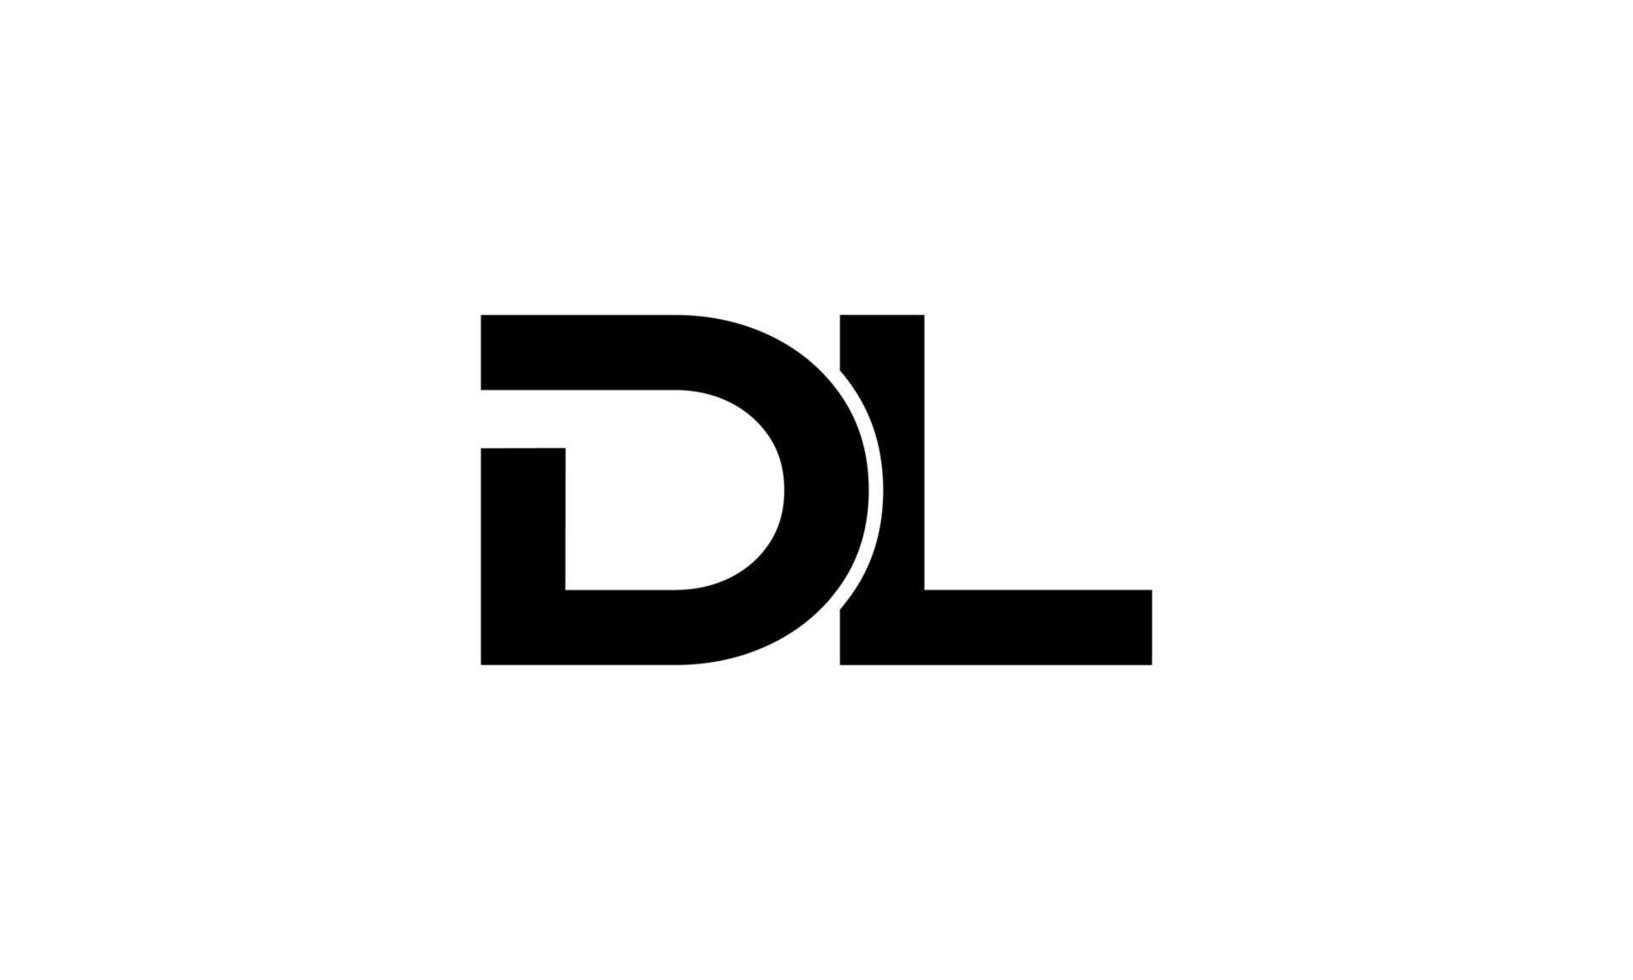 DL logo design. Initial DL letter logo monogram design in black color Pro vector